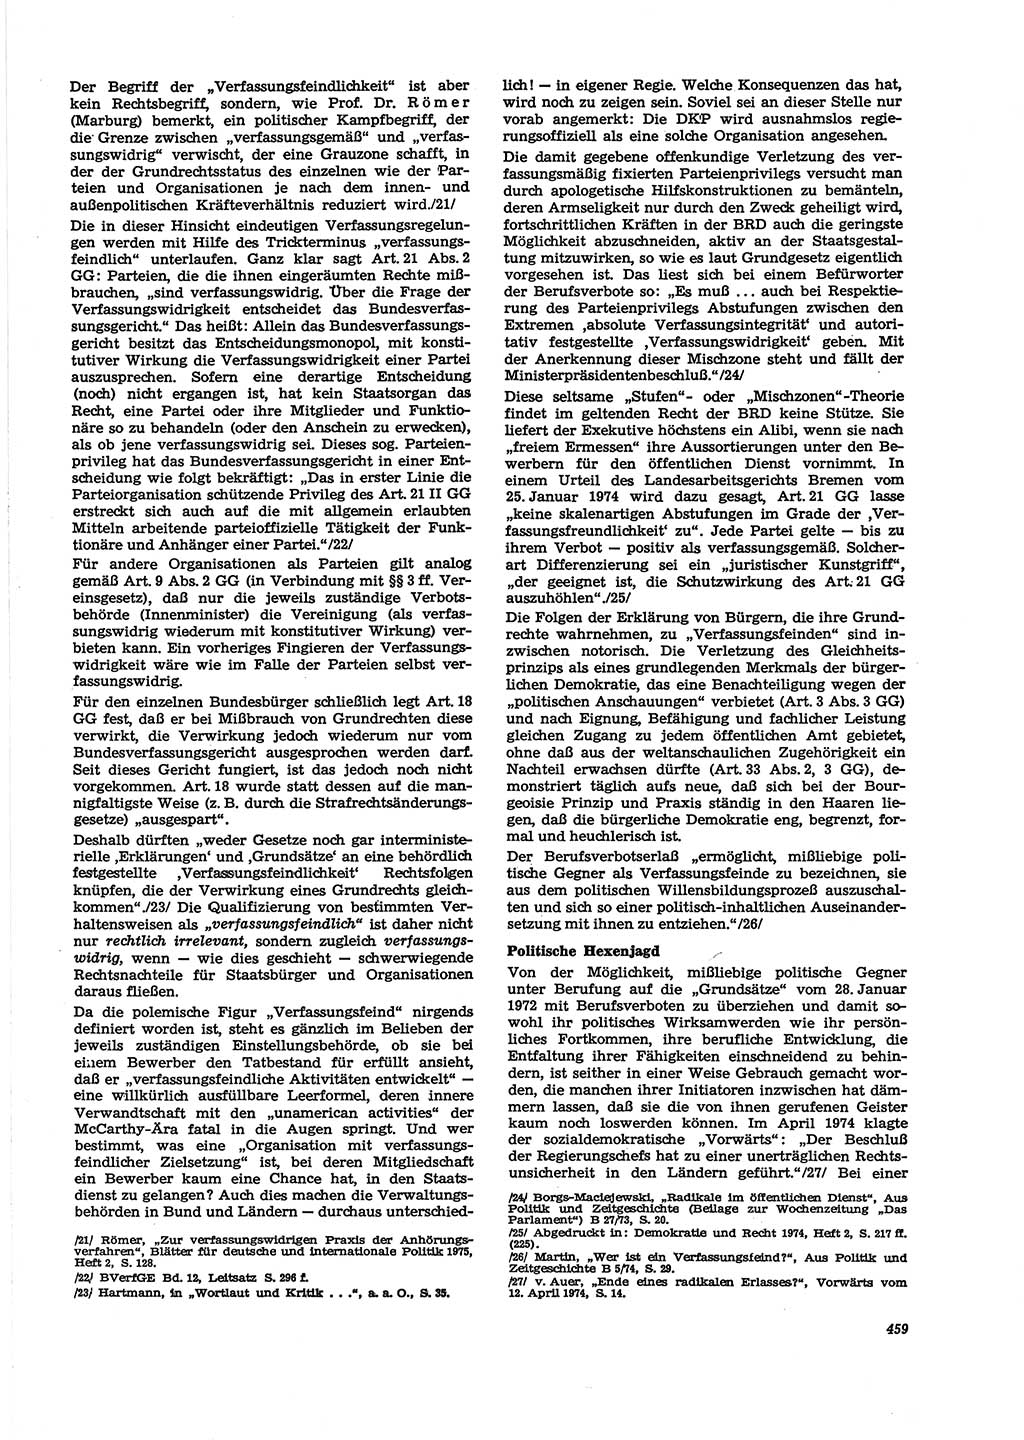 Neue Justiz (NJ), Zeitschrift für Recht und Rechtswissenschaft [Deutsche Demokratische Republik (DDR)], 29. Jahrgang 1975, Seite 459 (NJ DDR 1975, S. 459)